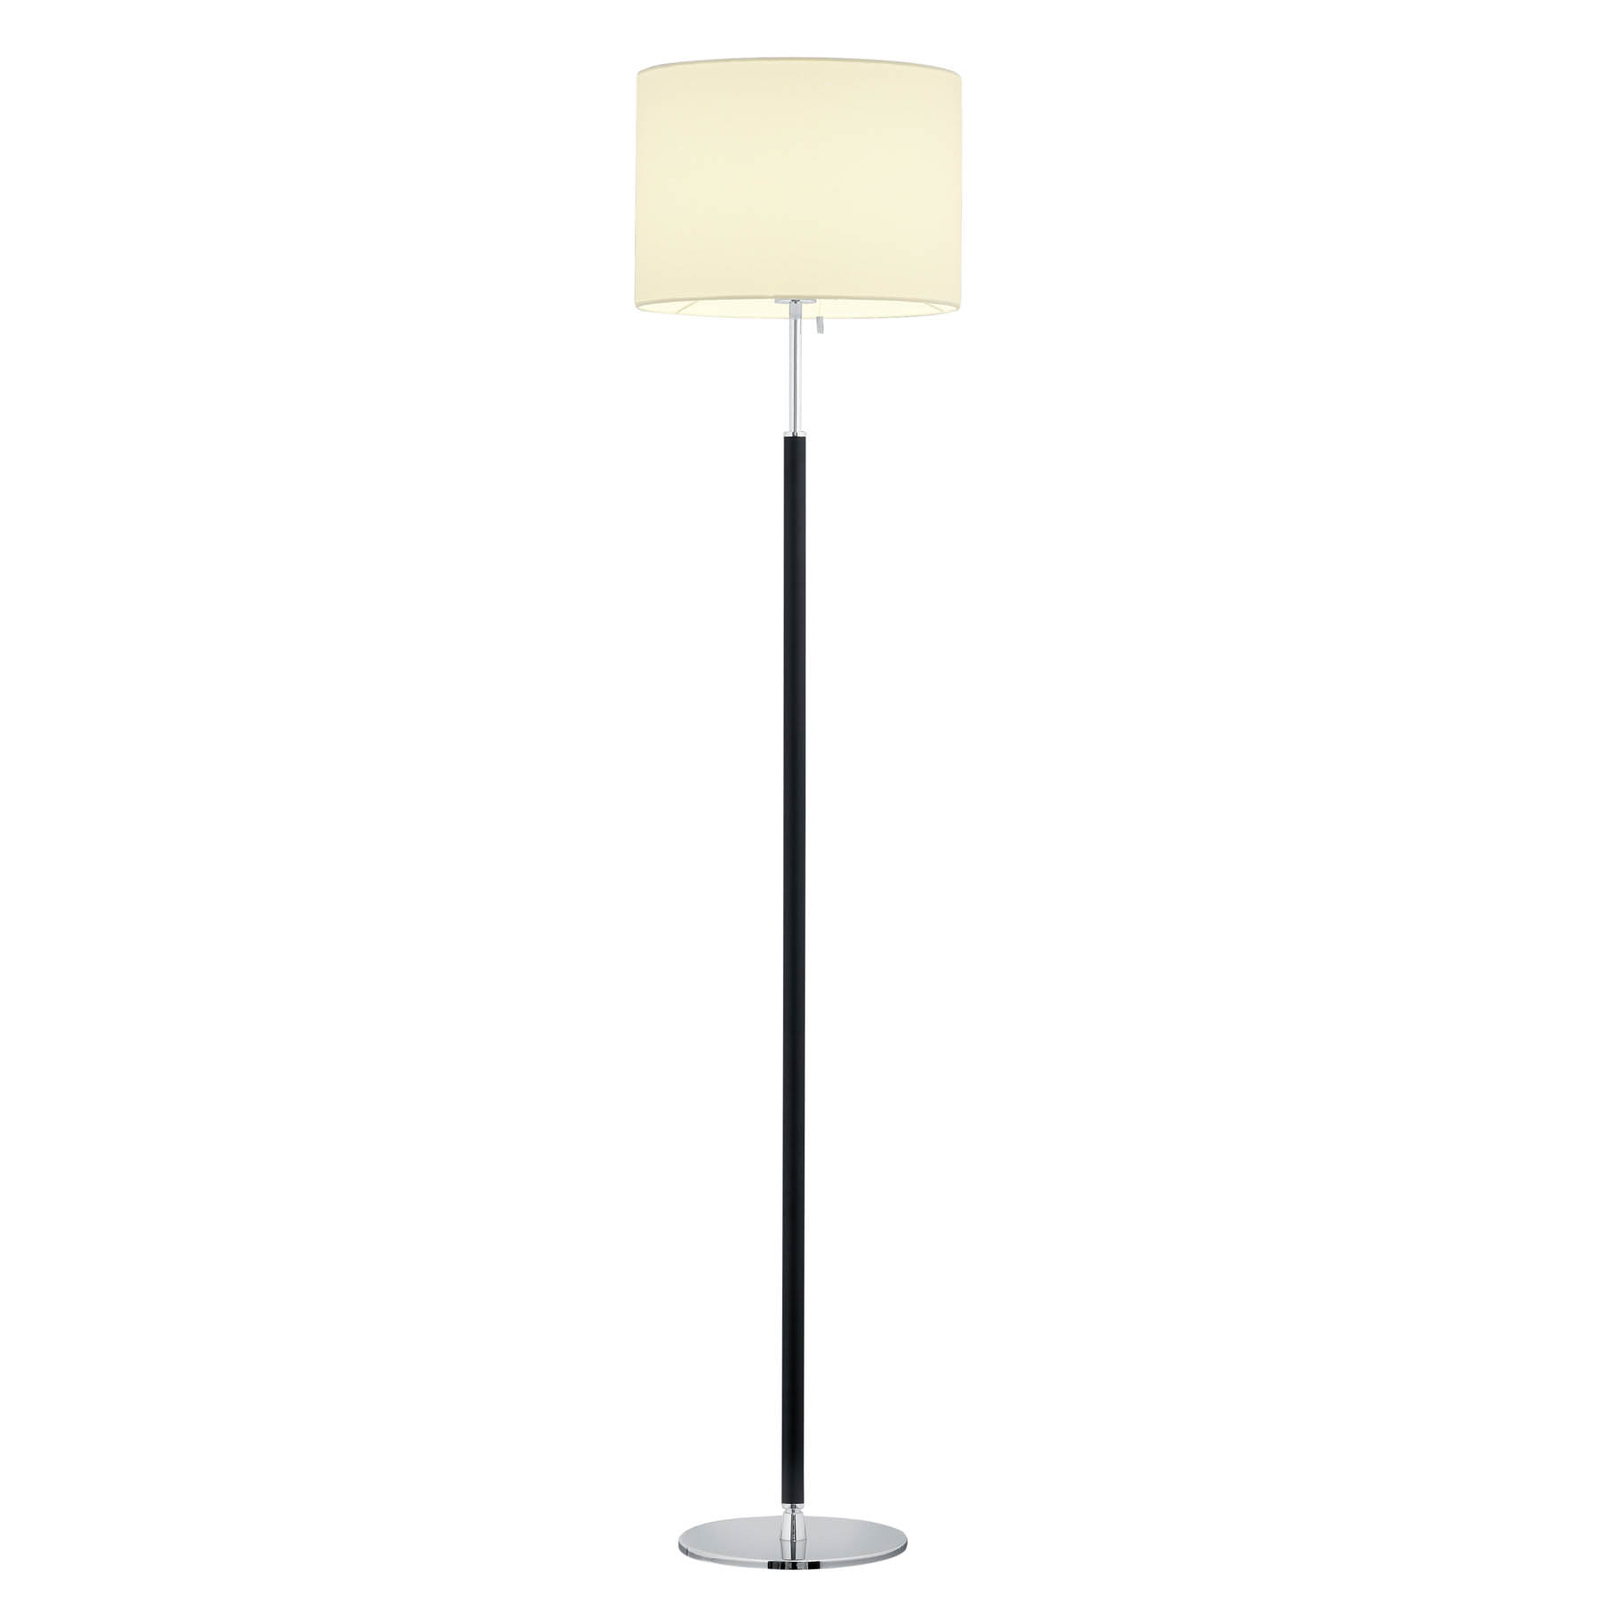 Pull floor lamp, fabric lampshade, 161 cm